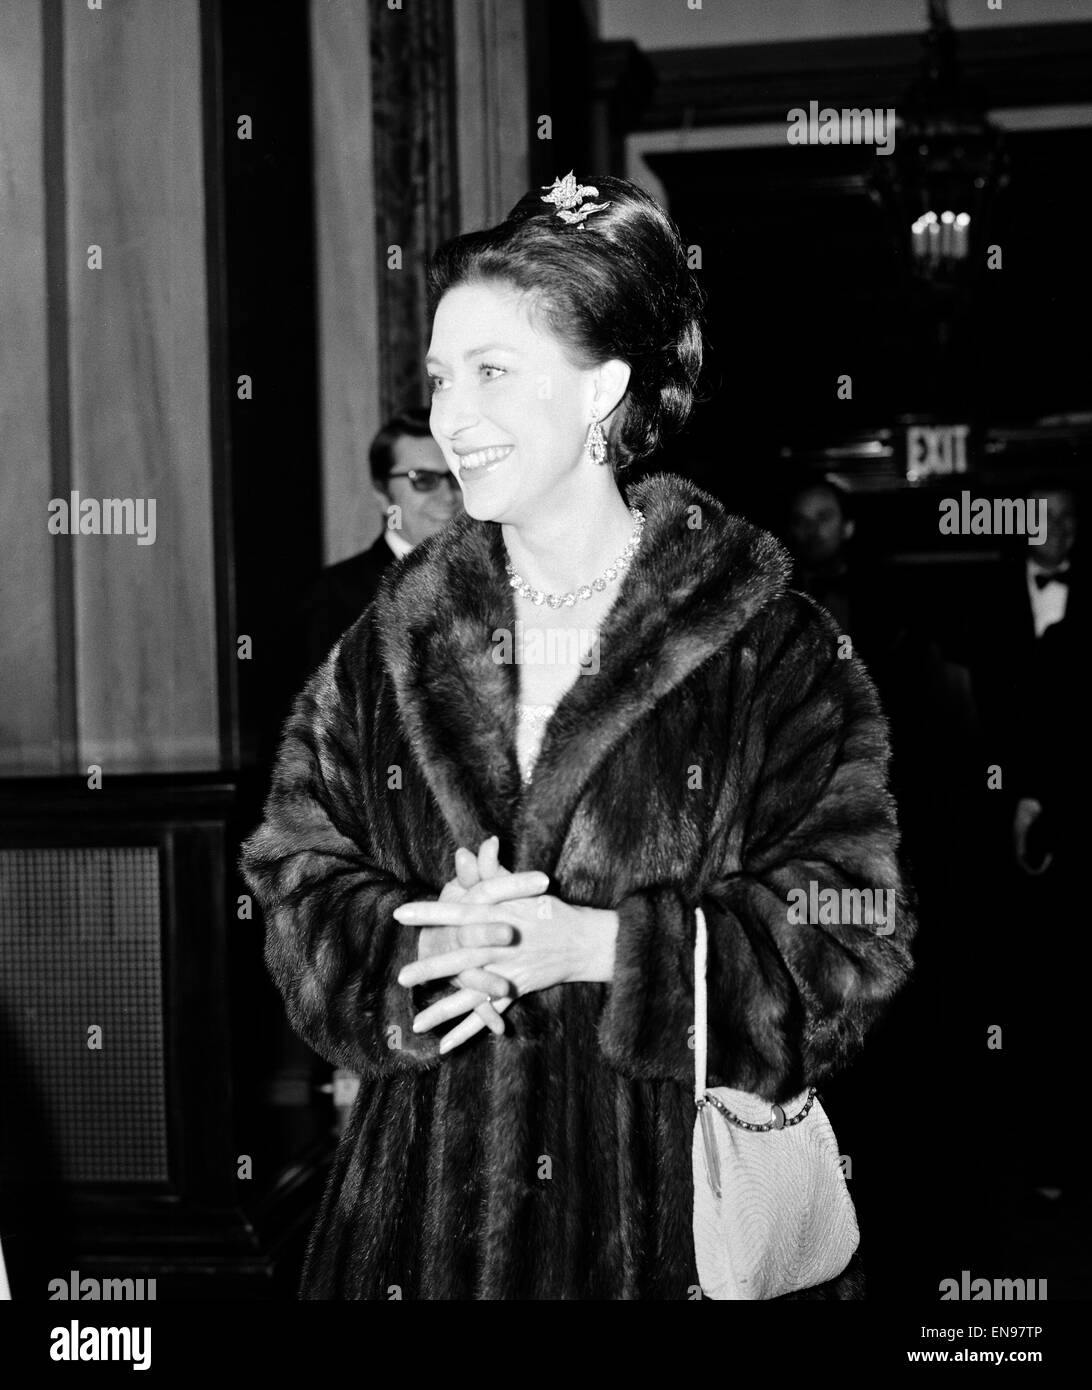 La principessa Margaret arrivando presso la Royal Opera House a vedere un balletto premiere starring Margot Fonteyn e Rudolf Nureyev. Ella ha lasciato cadere nel backstage quando i Rolling Stones girato nel 1976. Il 23 febbraio 1967. Foto Stock